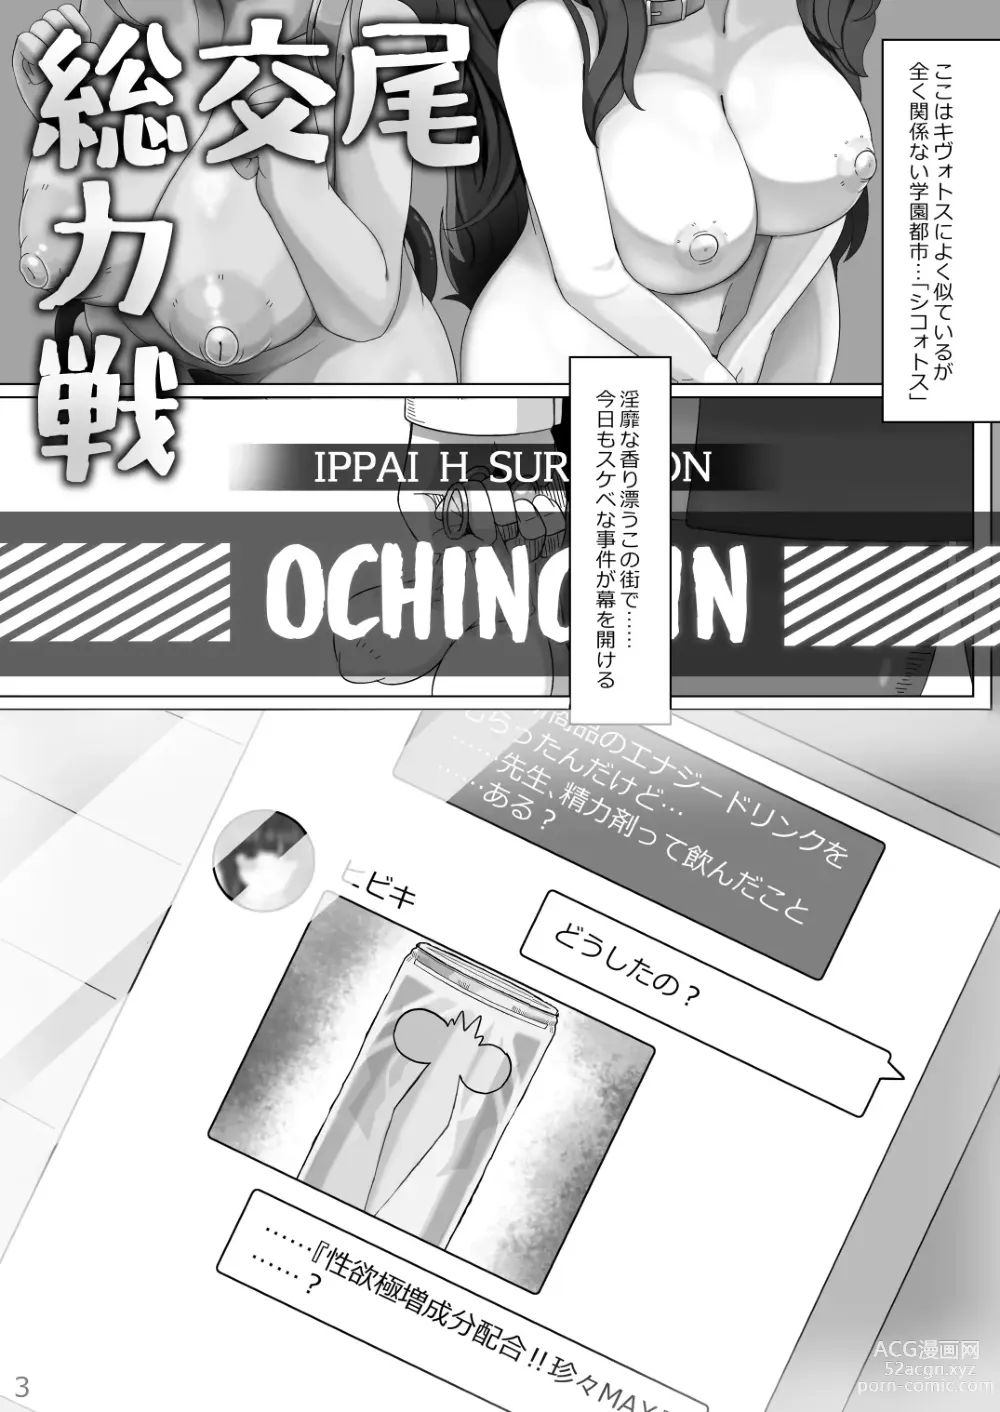 Page 2 of doujinshi Koubi Souryokusen OCHINCHIN